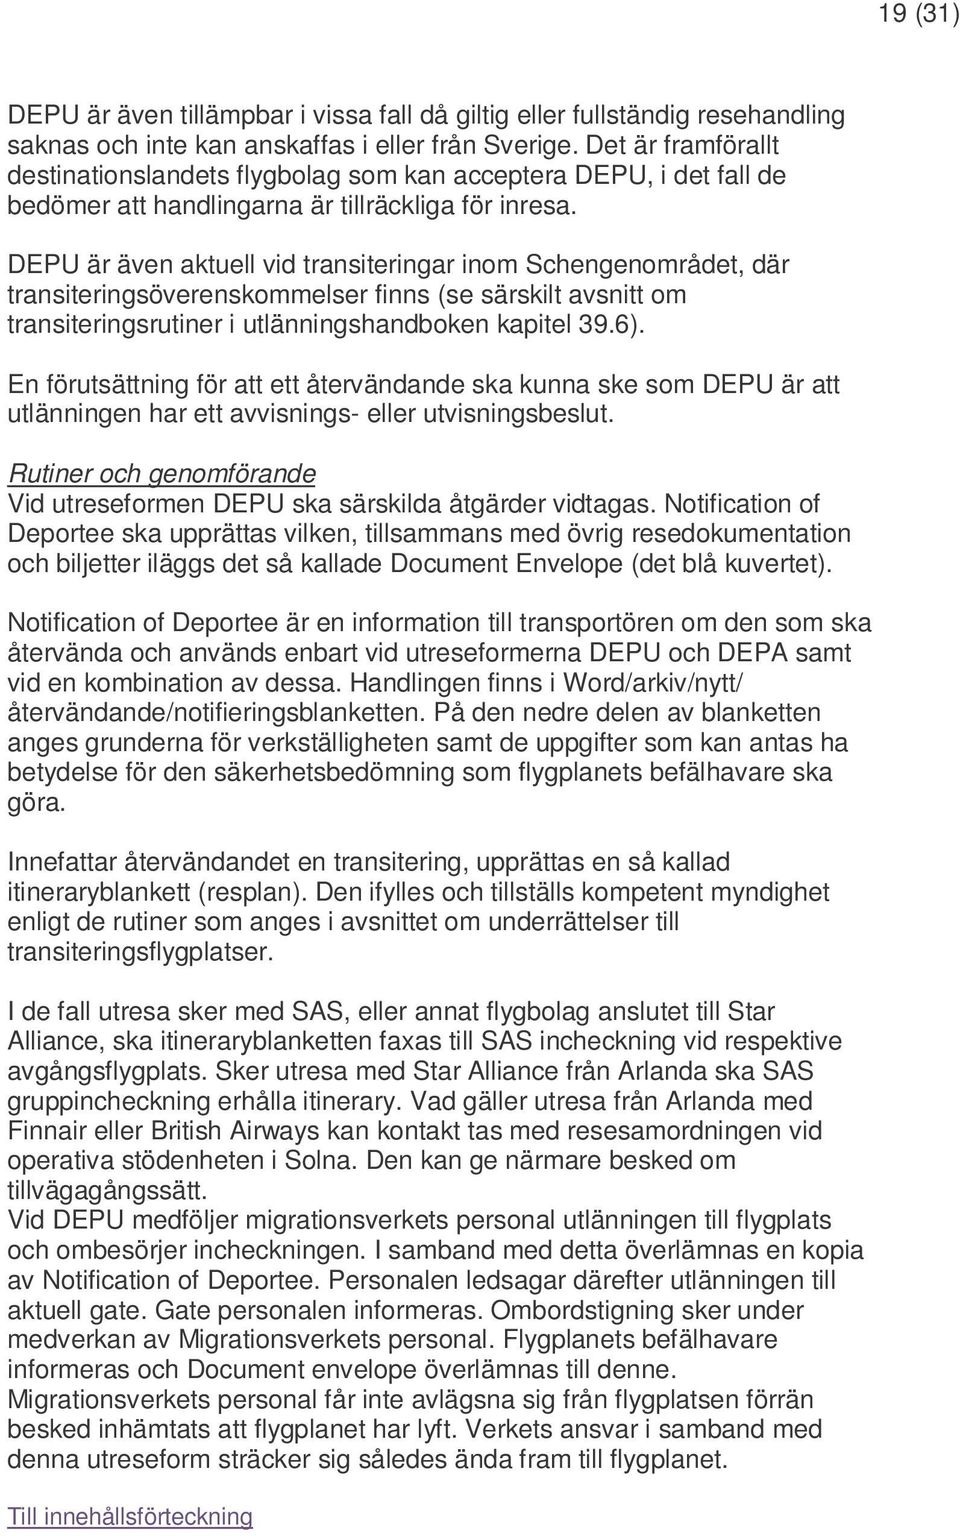 DEPU är även aktuell vid transiteringar inom Schengenområdet, där transiteringsöverenskommelser finns (se särskilt avsnitt om transiteringsrutiner i utlänningshandboken kapitel 39.6).